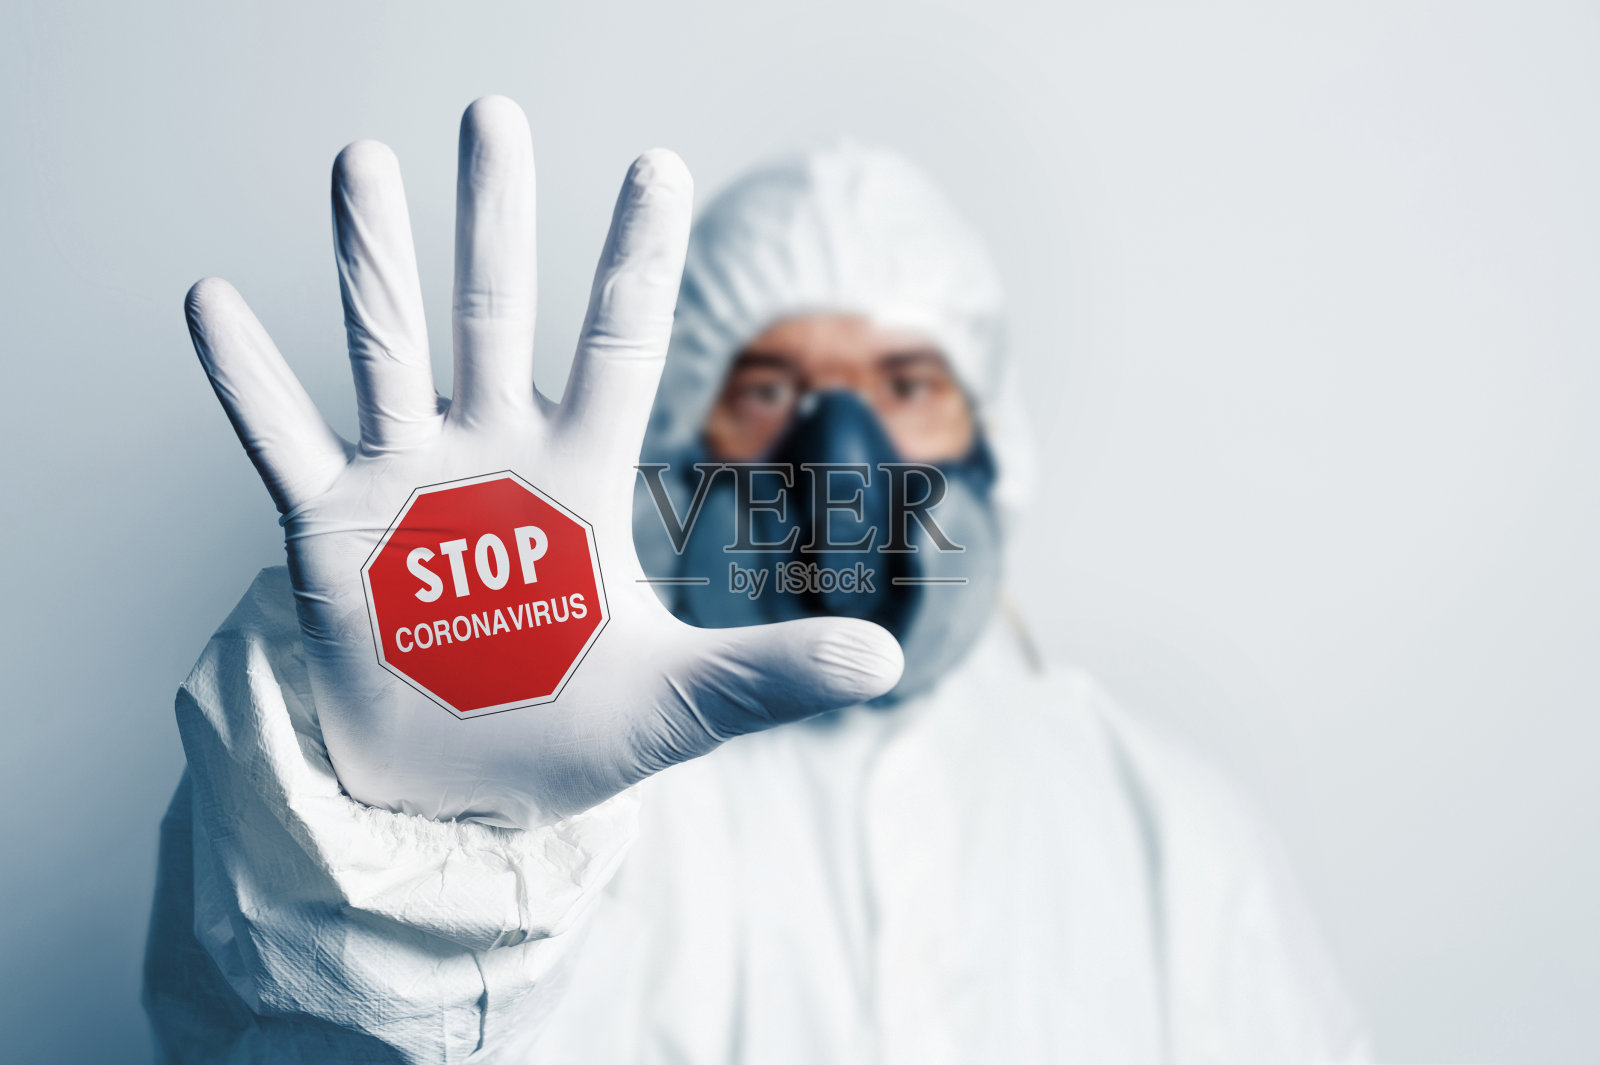 身着防护服的医护人员手持“阻止冠状病毒”的手势照片摄影图片